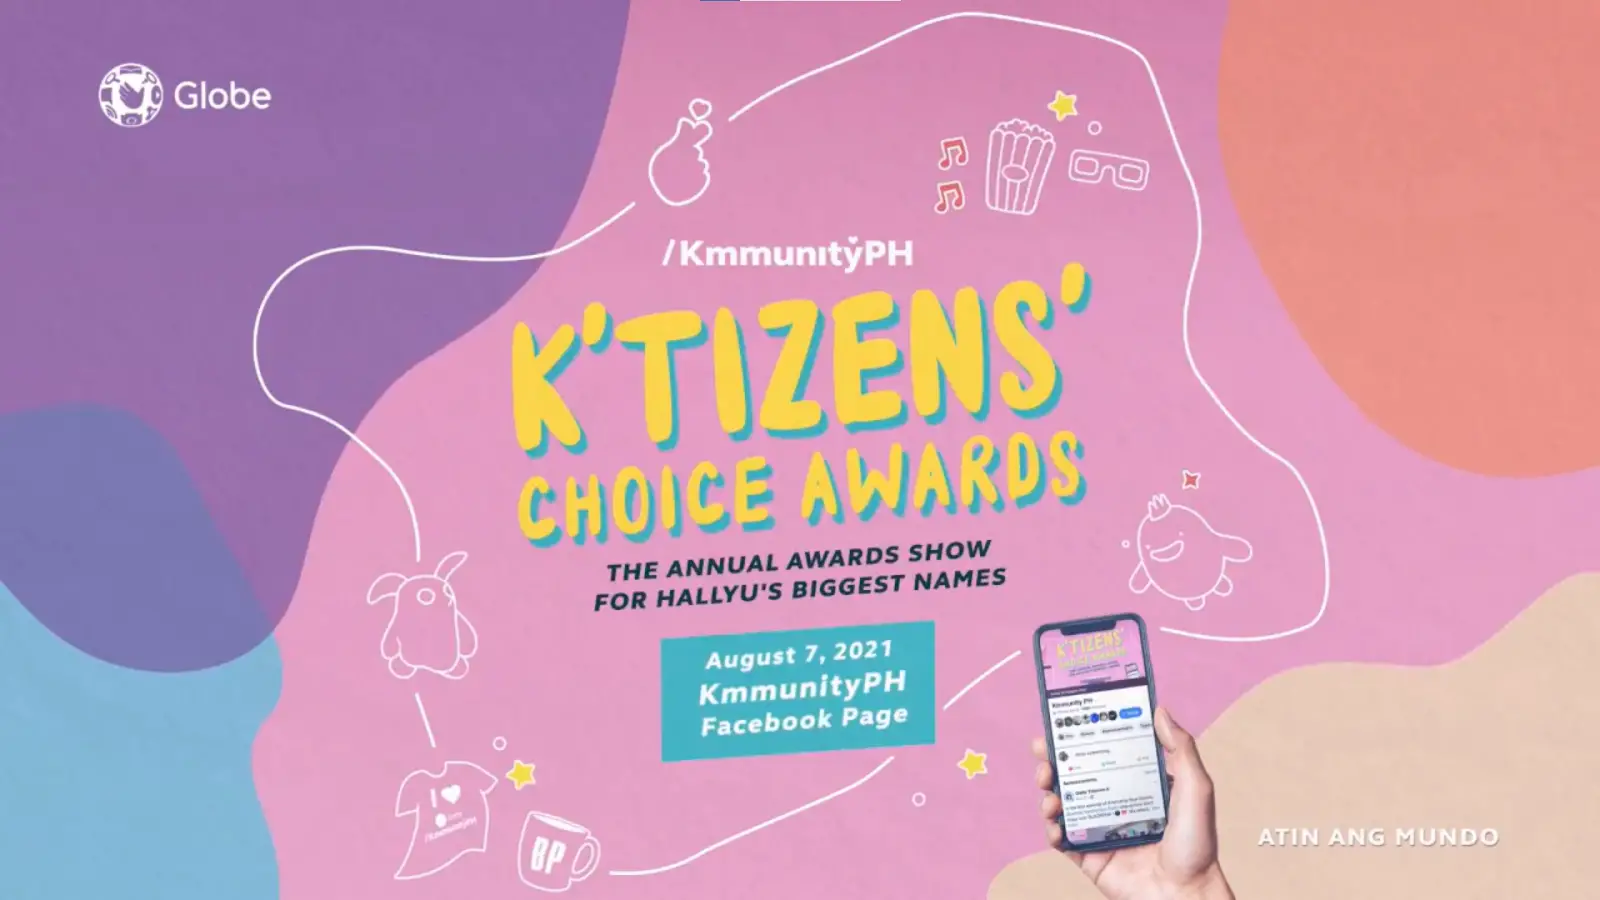 K’tizens’ Choice Awards